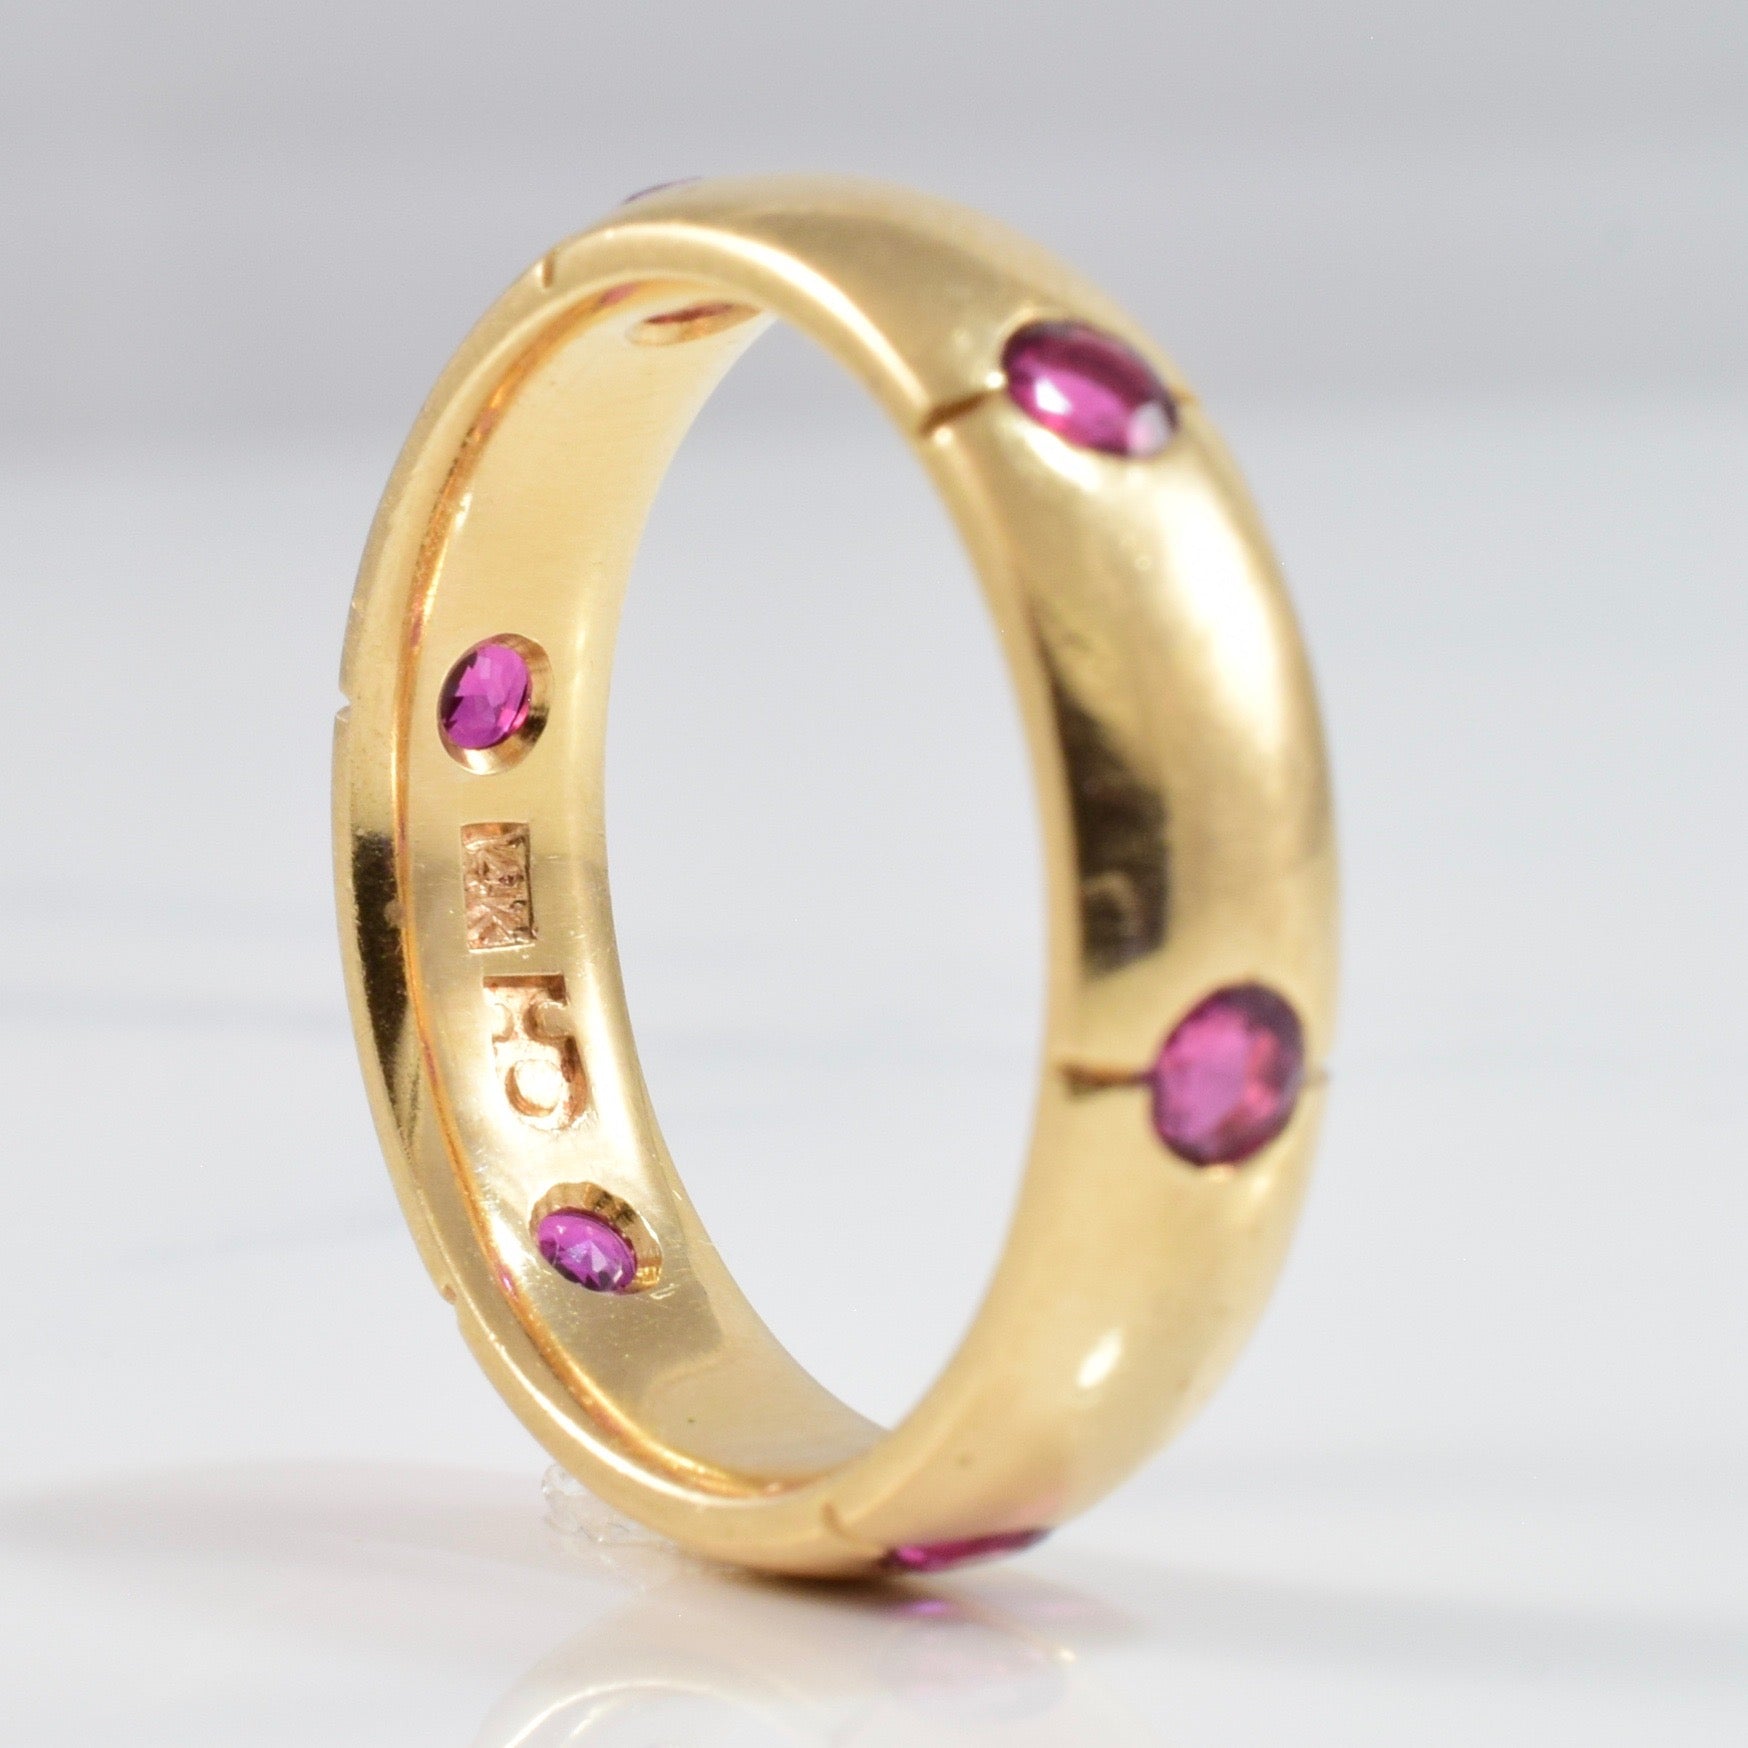 'Chanel' Vintage Gypsy Set Ruby Ring | SZ 6.75 | - 100 Ways